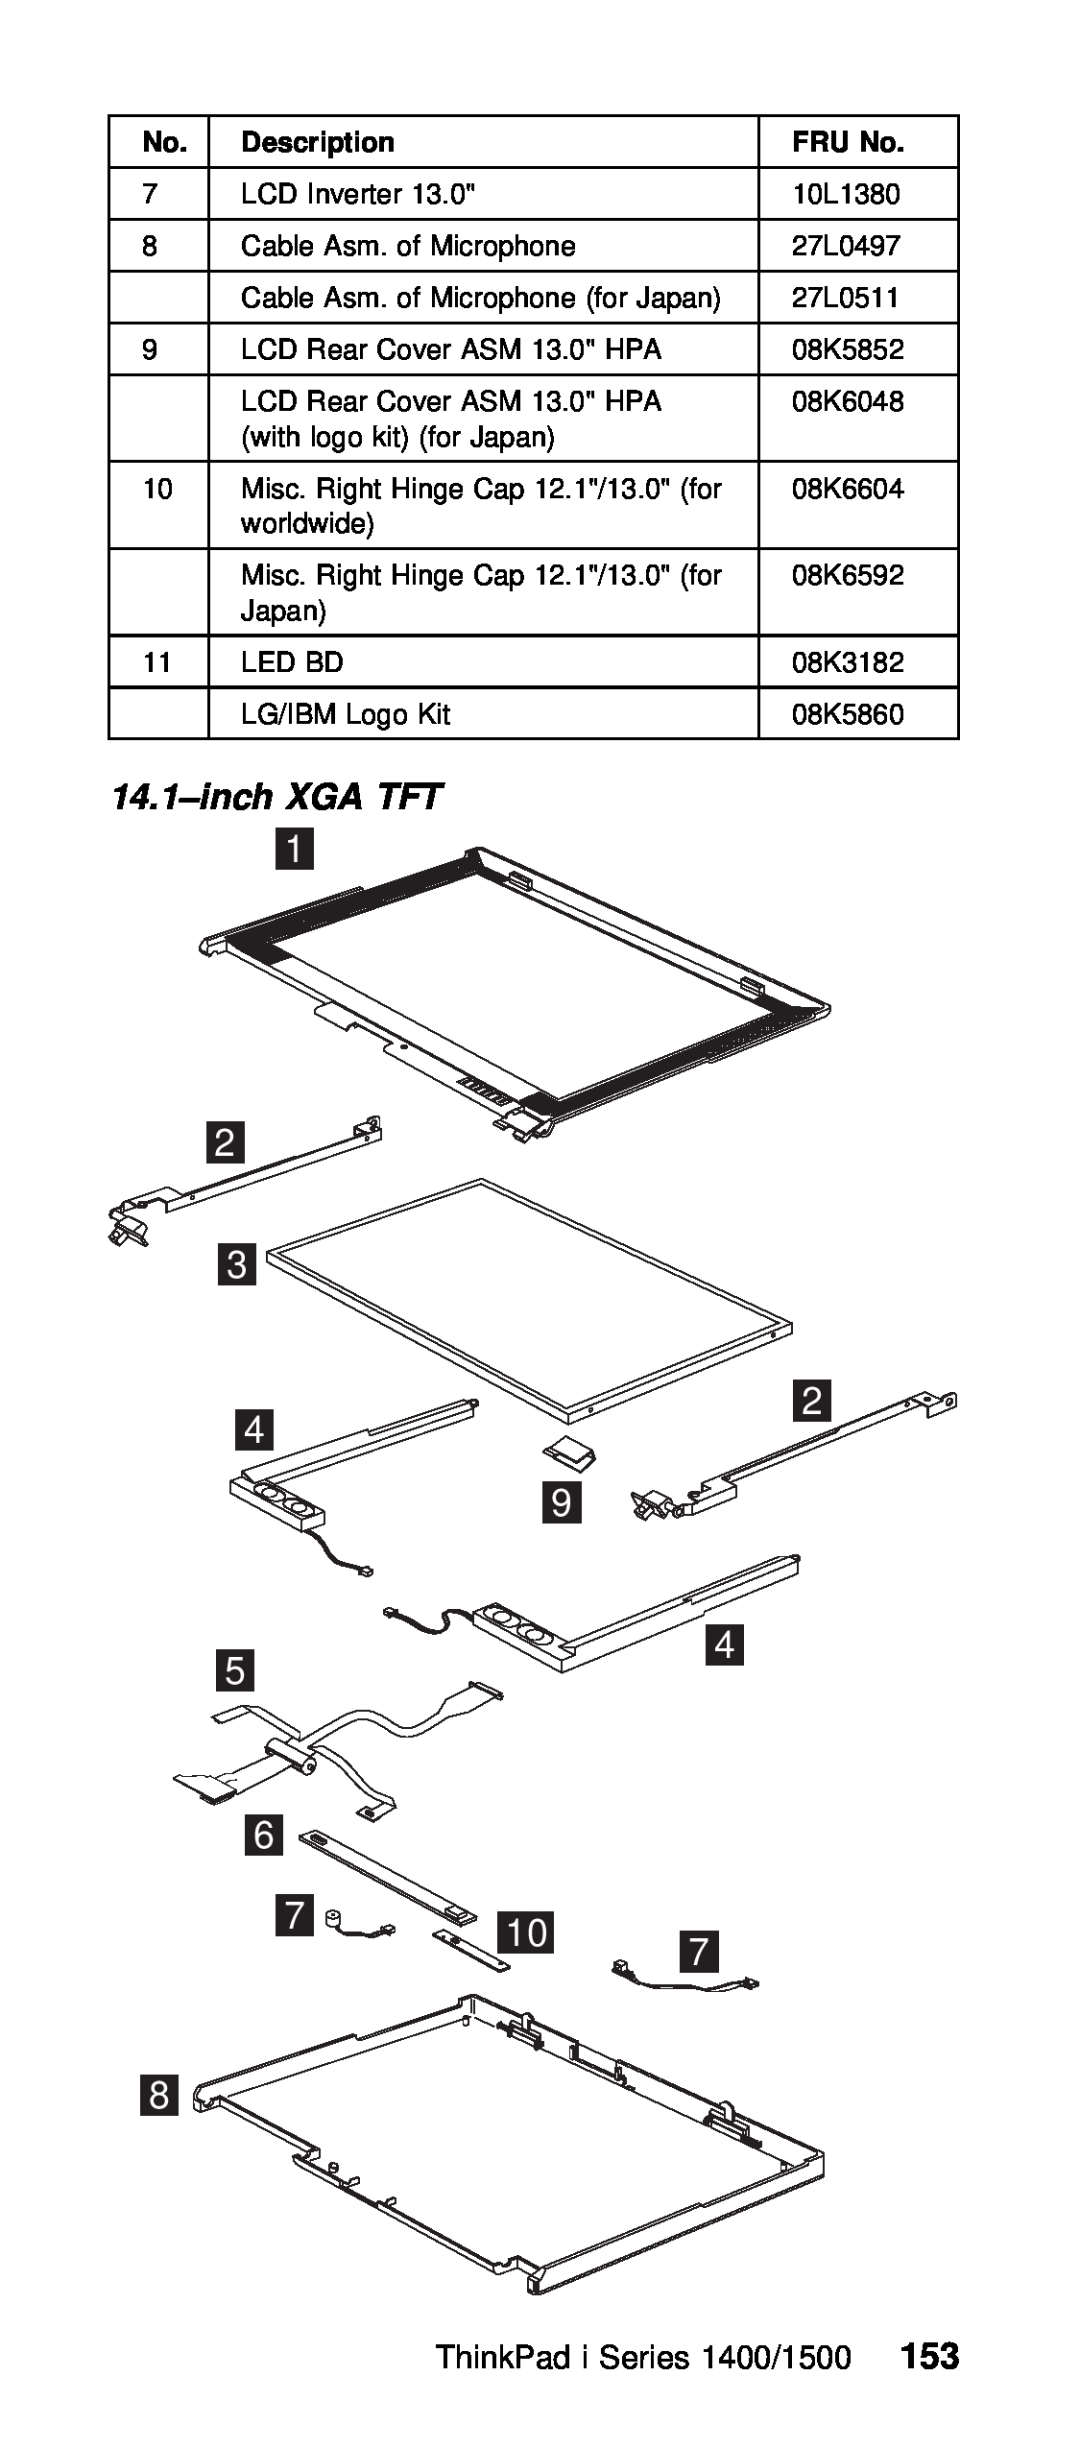 IBM Series 1500 manual inch XGA TFT, ThinkPad i Series 1400/153500, FRU No 